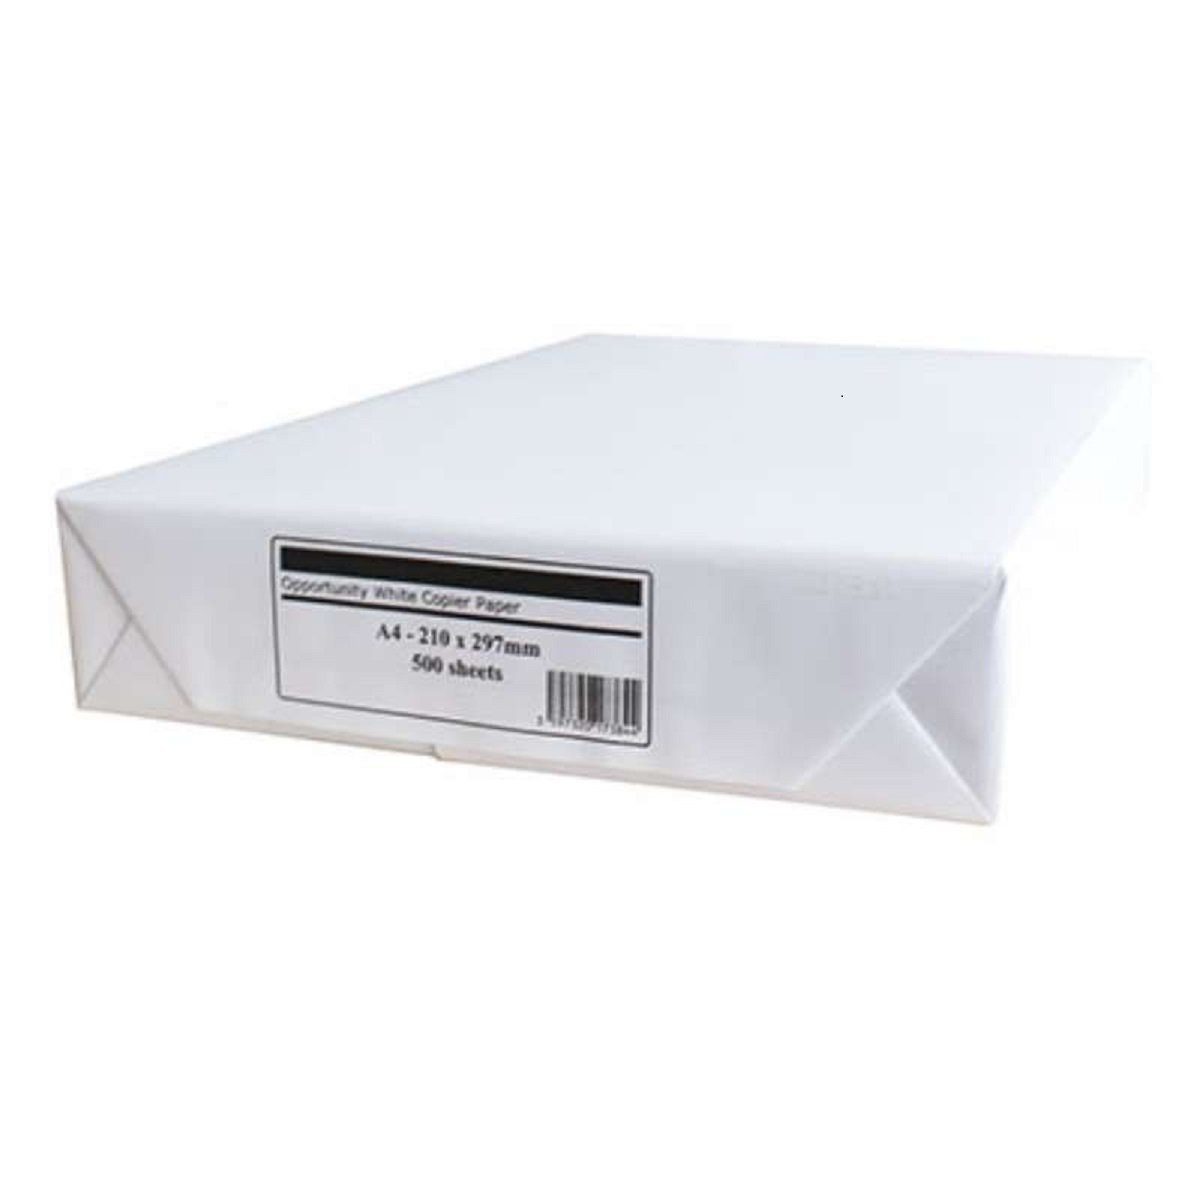 ANTALIS Kopierpapier Antalis Multifunktions-Kopierpapier DIN A4, 70-75g/qm,  weiß, 500 Blatt, Multifunktionspapier